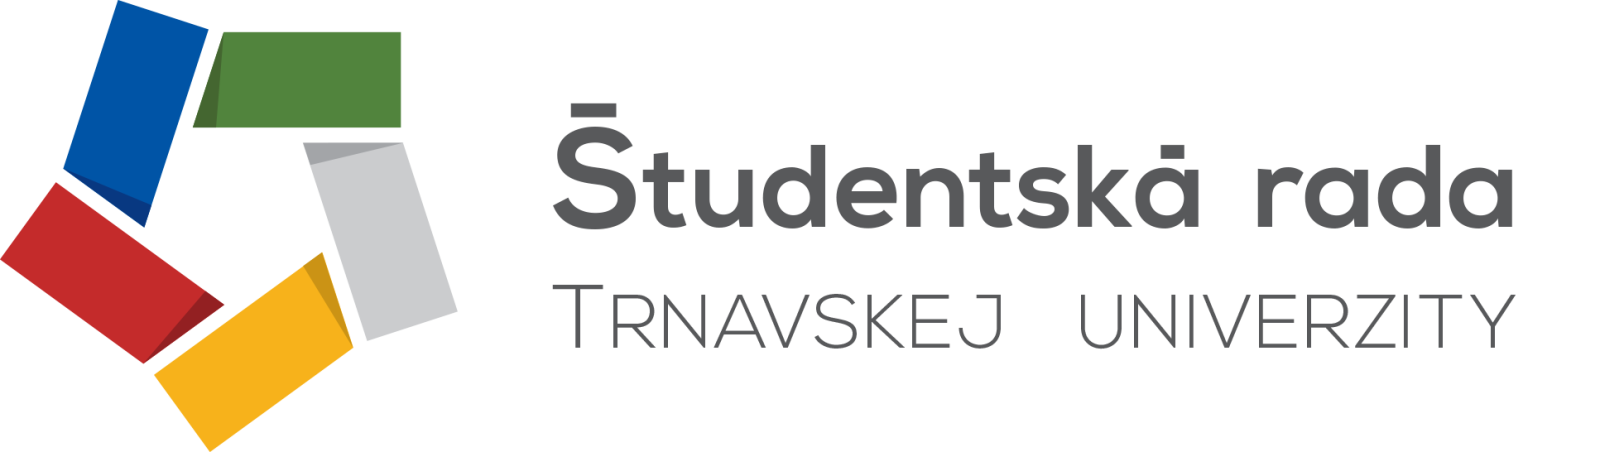 Študentská rada Trnavskej univerzity logo